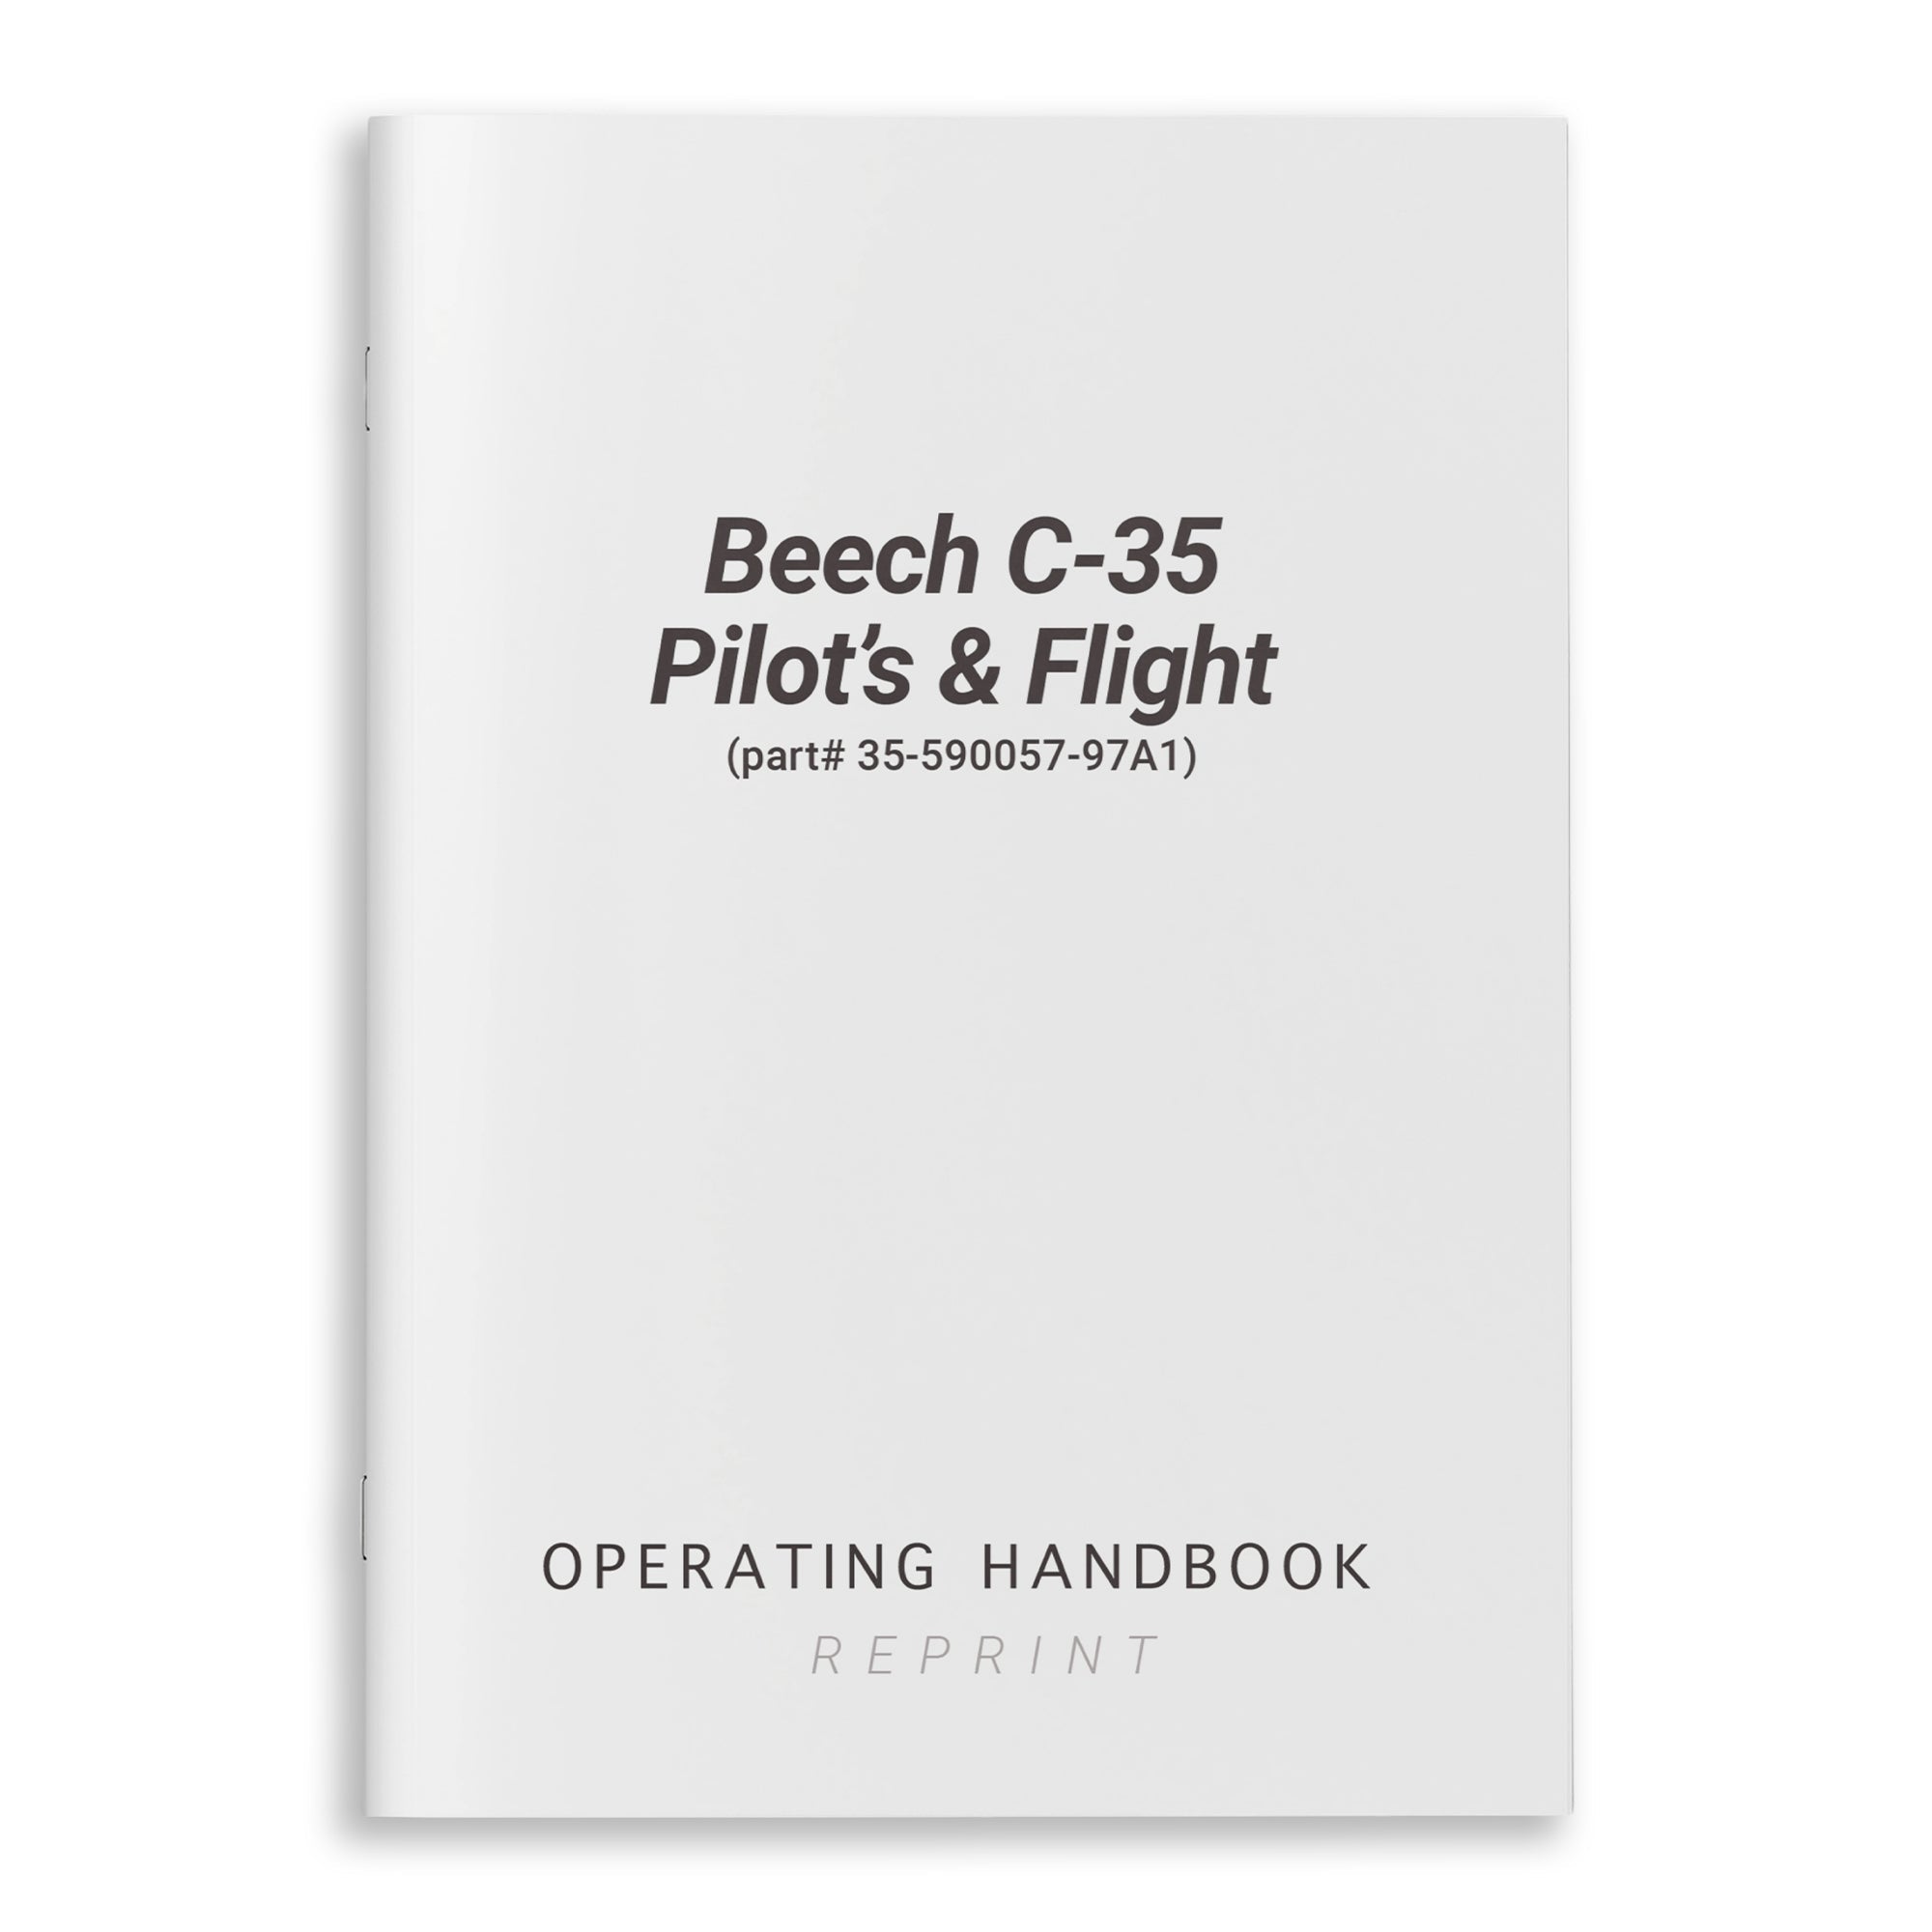 Beech C-35 Pilot's Operating Handbook & Flight (part# 35-590057-97A1) - PilotMall.com